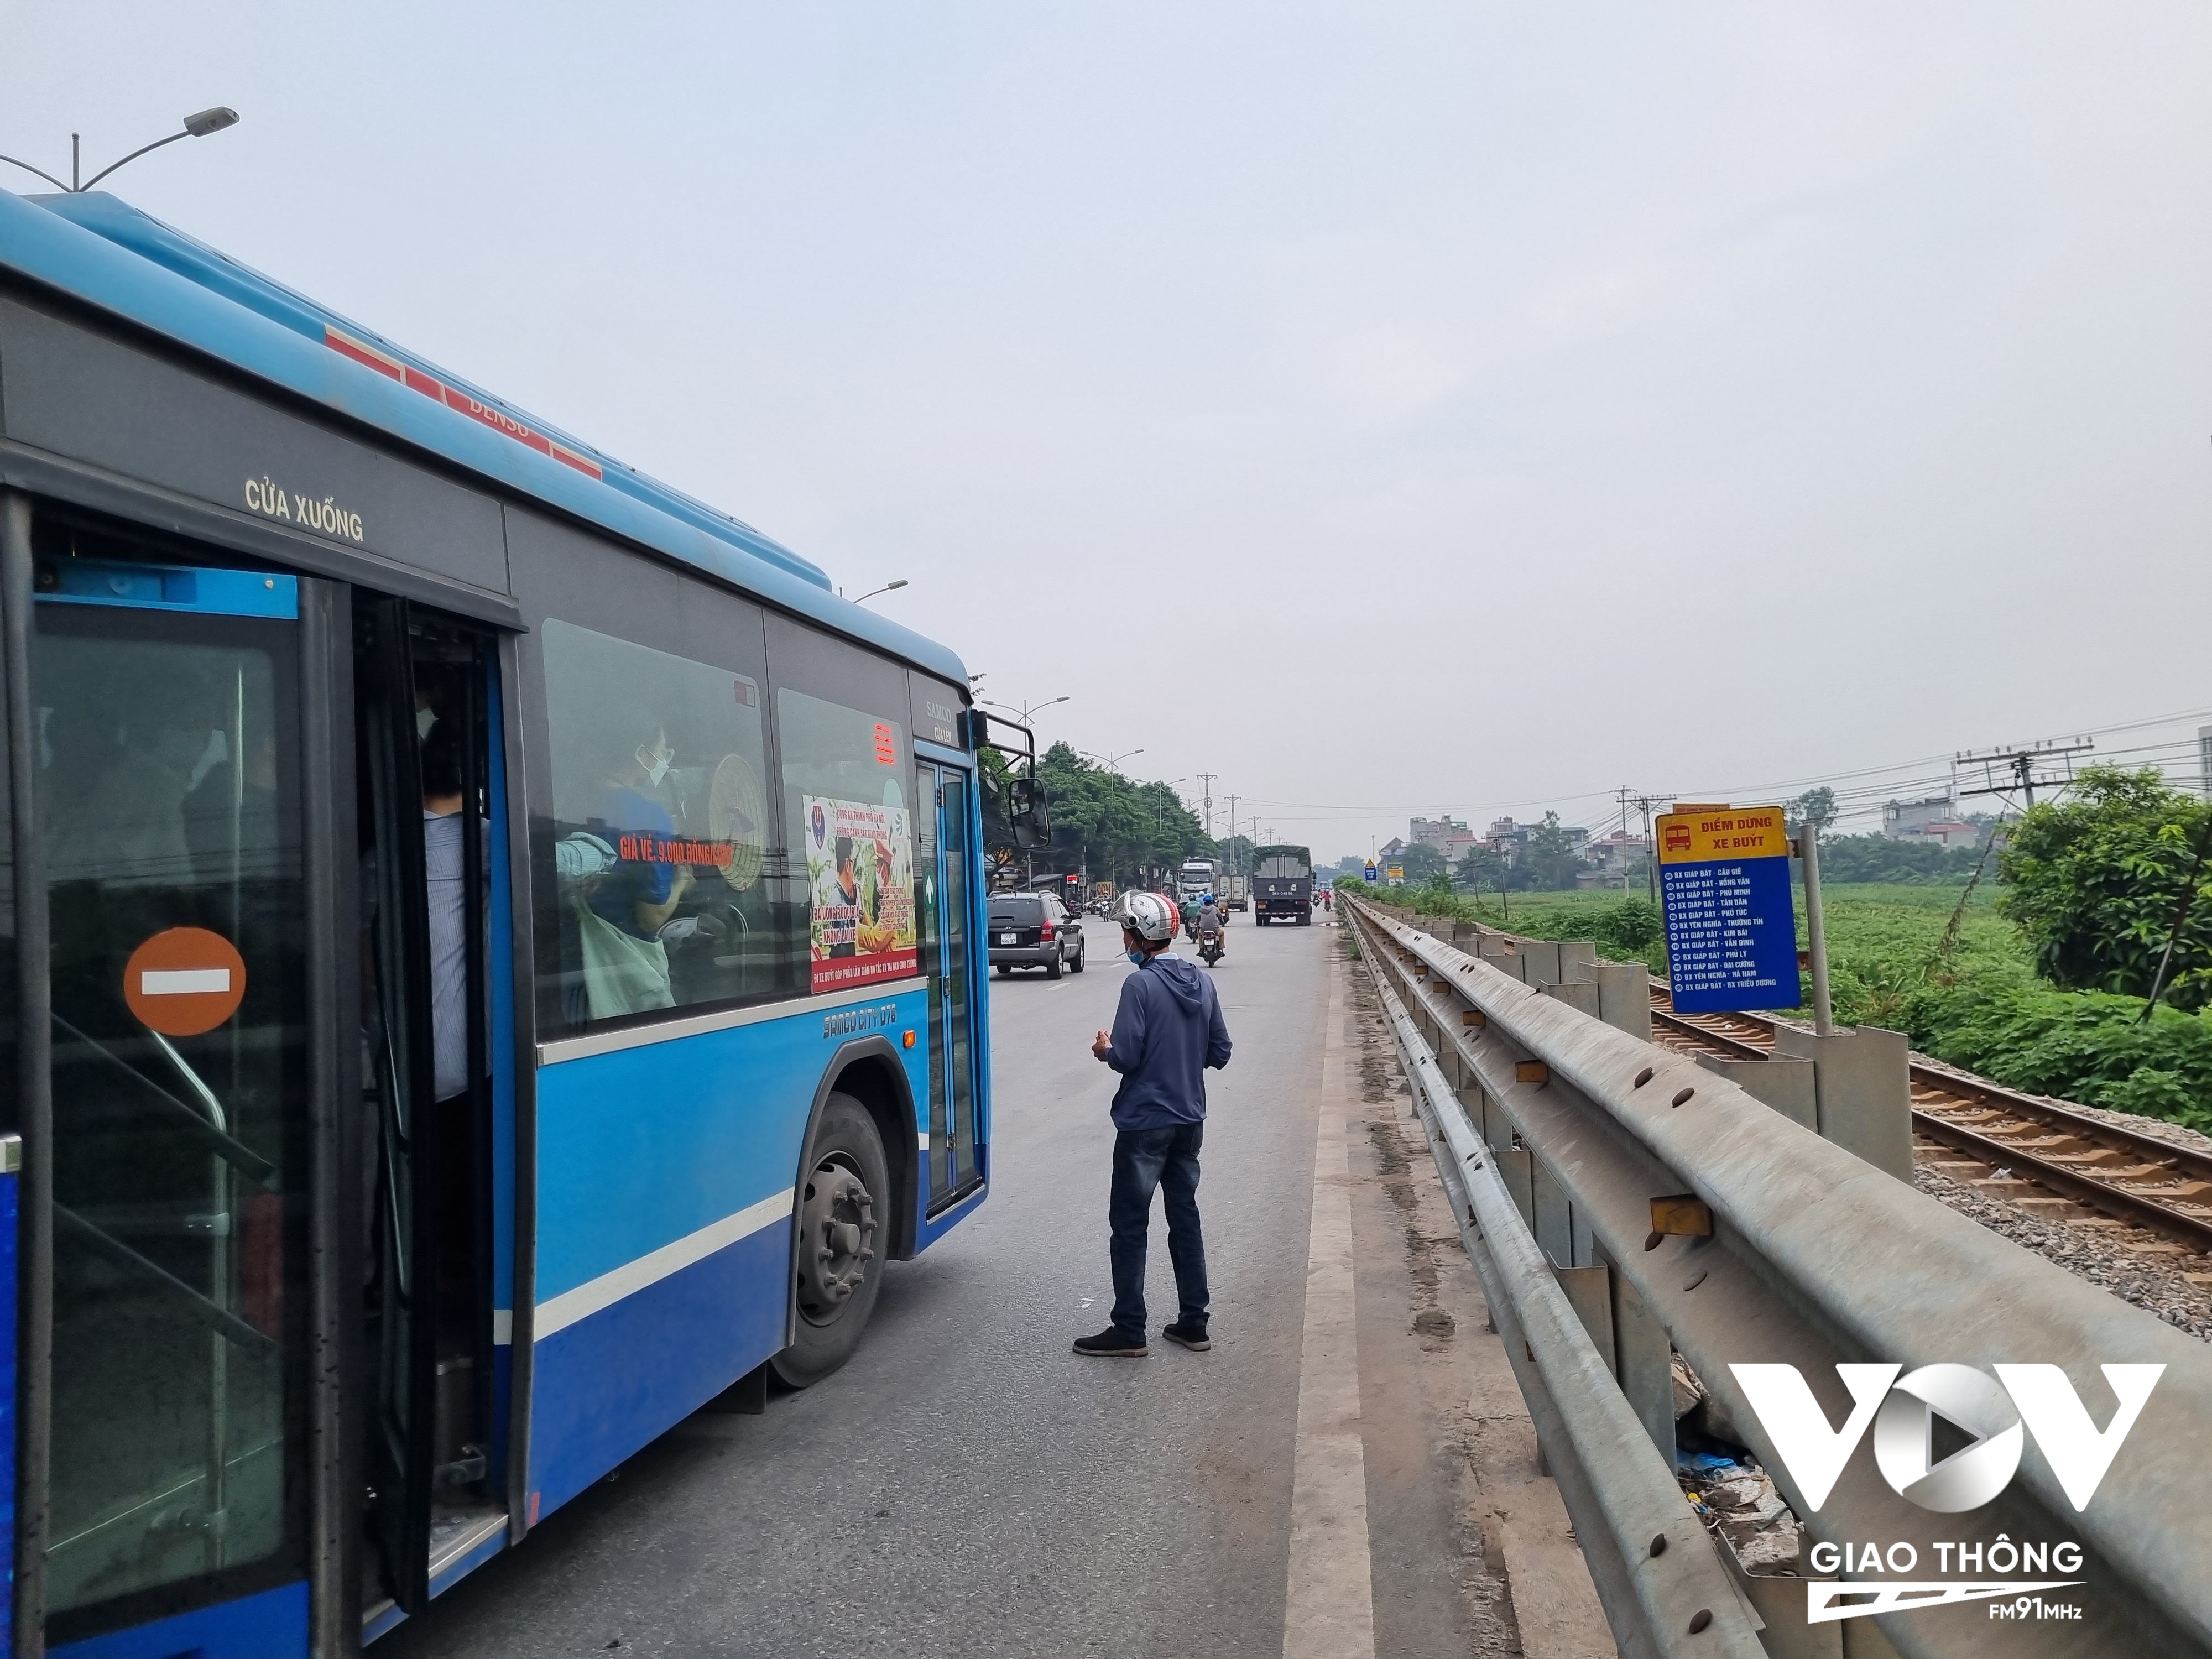 Dọc QL1 qua các huyện Thanh Trì, Thường Tín, Phú Xuyên (hướng đi phía Nam), đa phần điểm dừng xe buýt nằm trong hàng rào hành lang đường sắt, không có vỉa hè, người dân phải đứng ngay trên lòng đường để đợi xe buýt